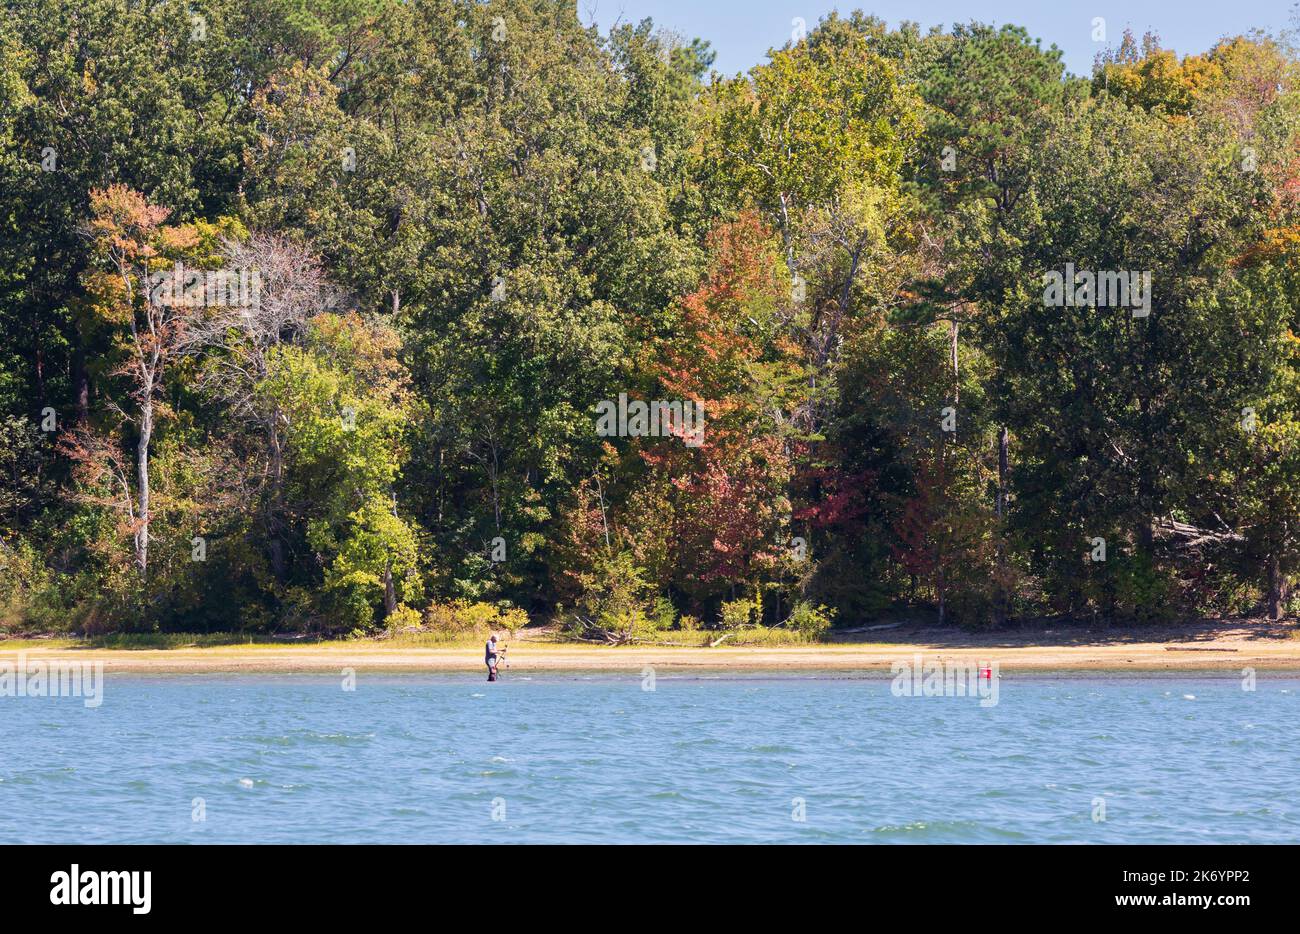 Un homme qui pêche dans des eaux peu profondes sur le lac Kentucky au début de l'automne. Les feuilles commencent à changer de couleur début octobre. Banque D'Images